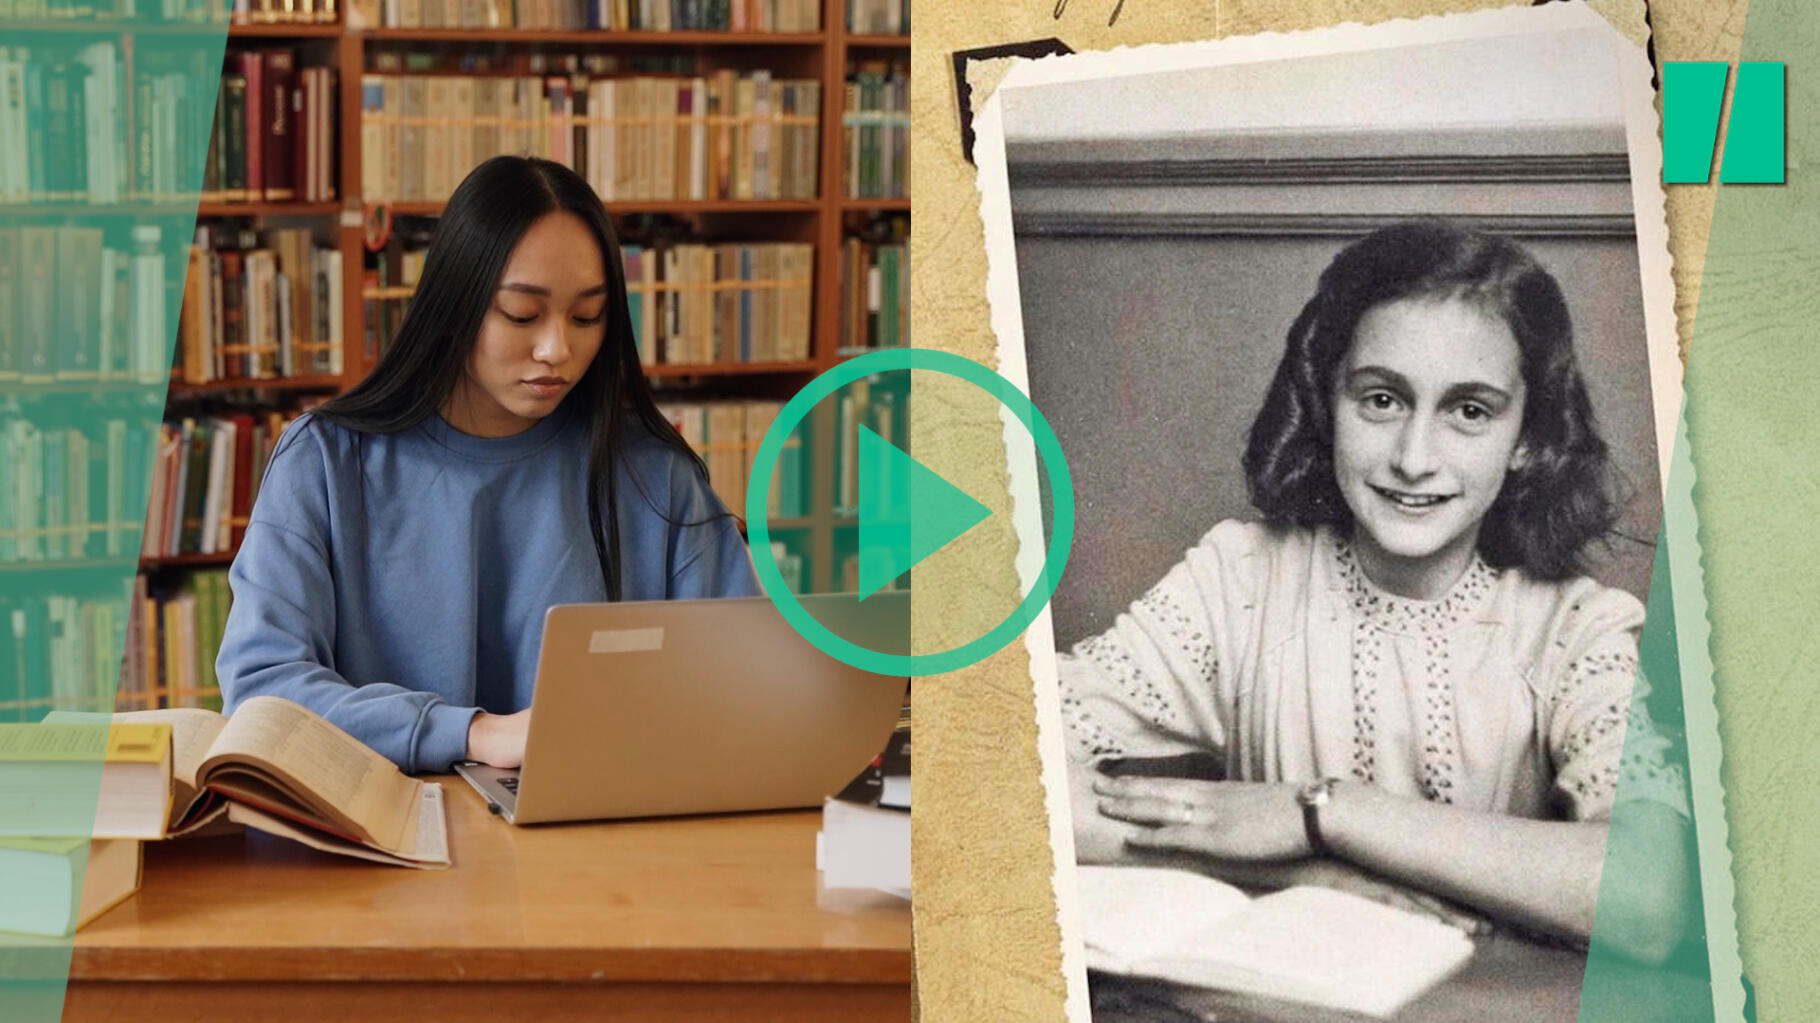 Un prof du Texas viré après avoir lu le journal d’Anne Frank à ses élèves